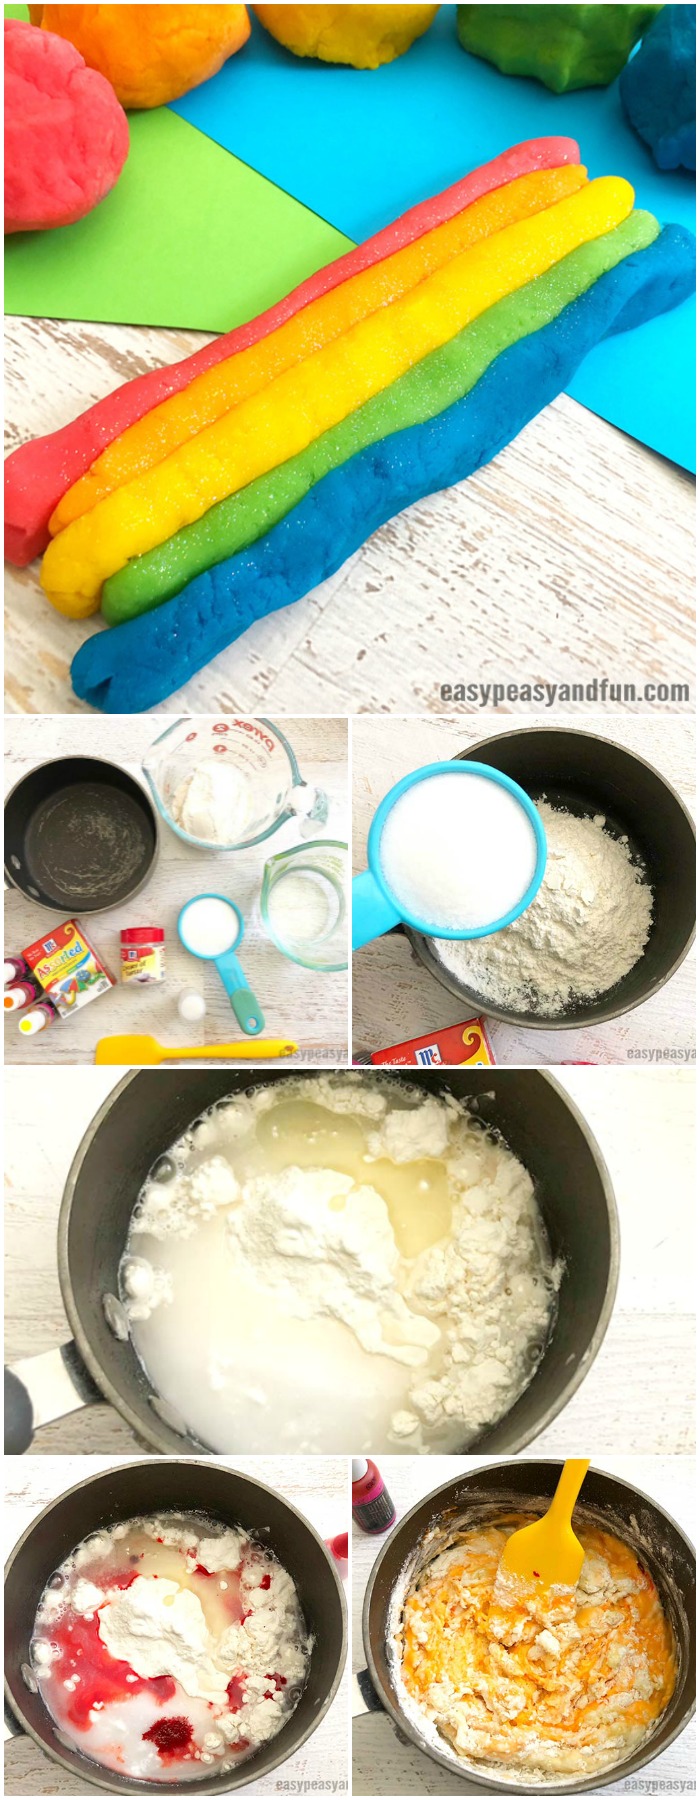 How to Make Playdough Rainbow Playdough Recipe #homemadeplaydough #PlaydoughRecipe #playdough